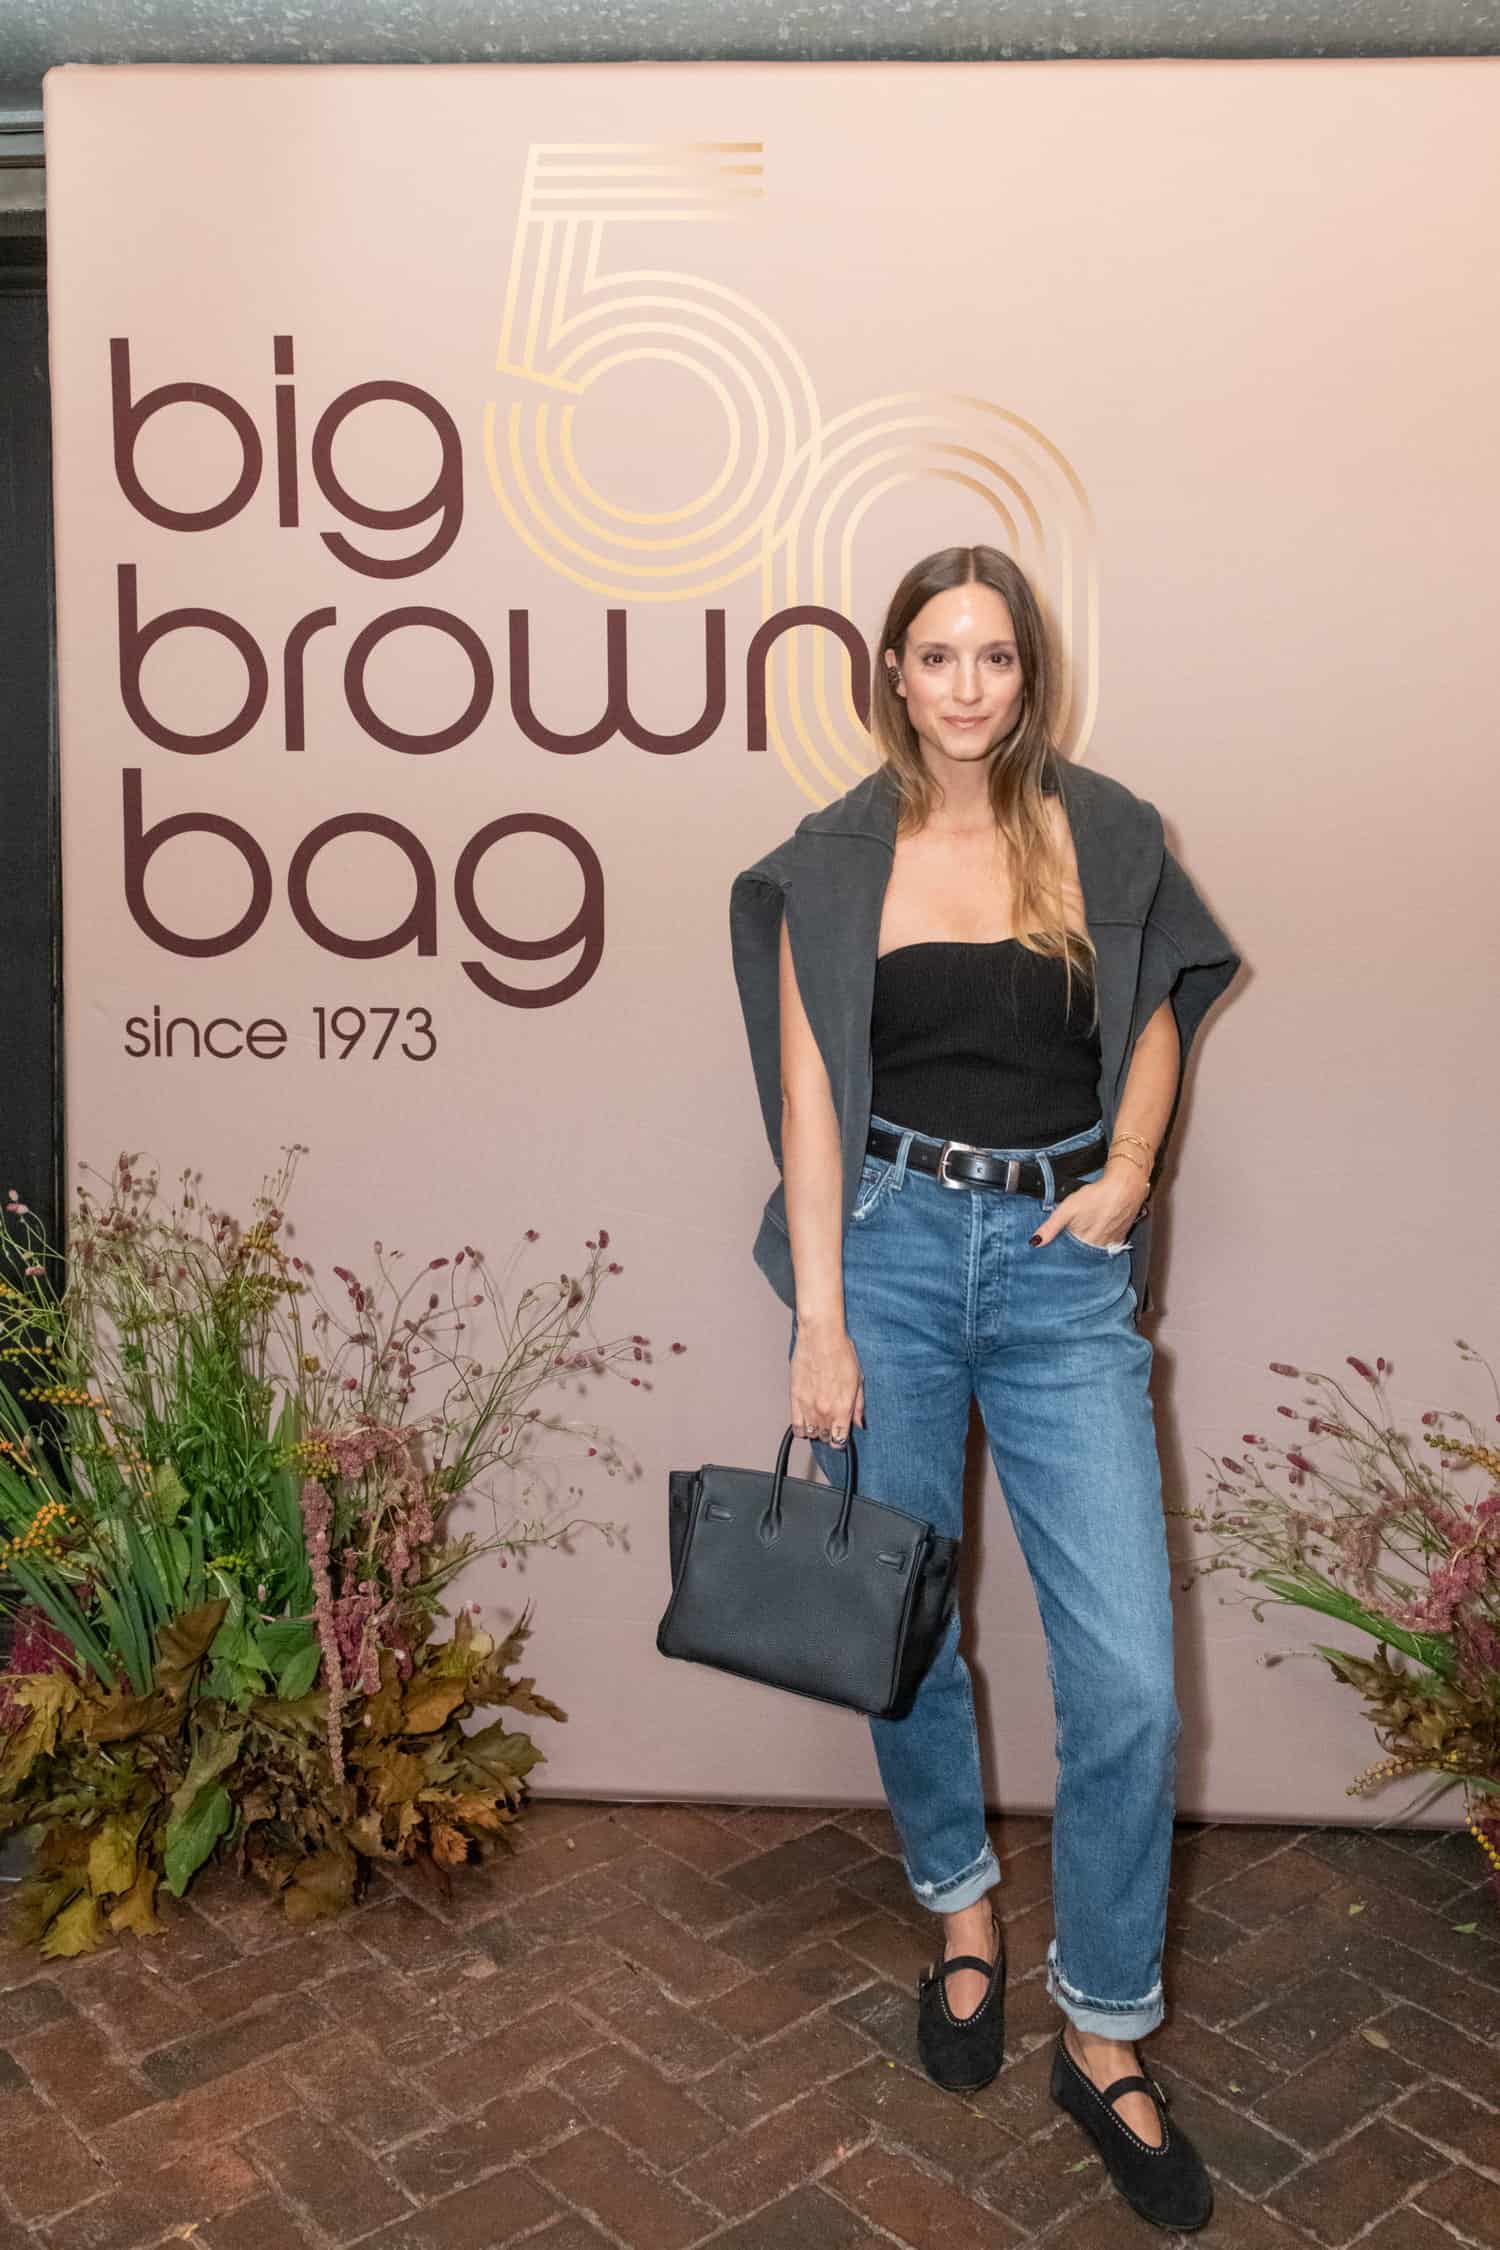 BLOOMINGDALE'S LITTLE BROWN BAG (WHAT'S IN MY BAG) 